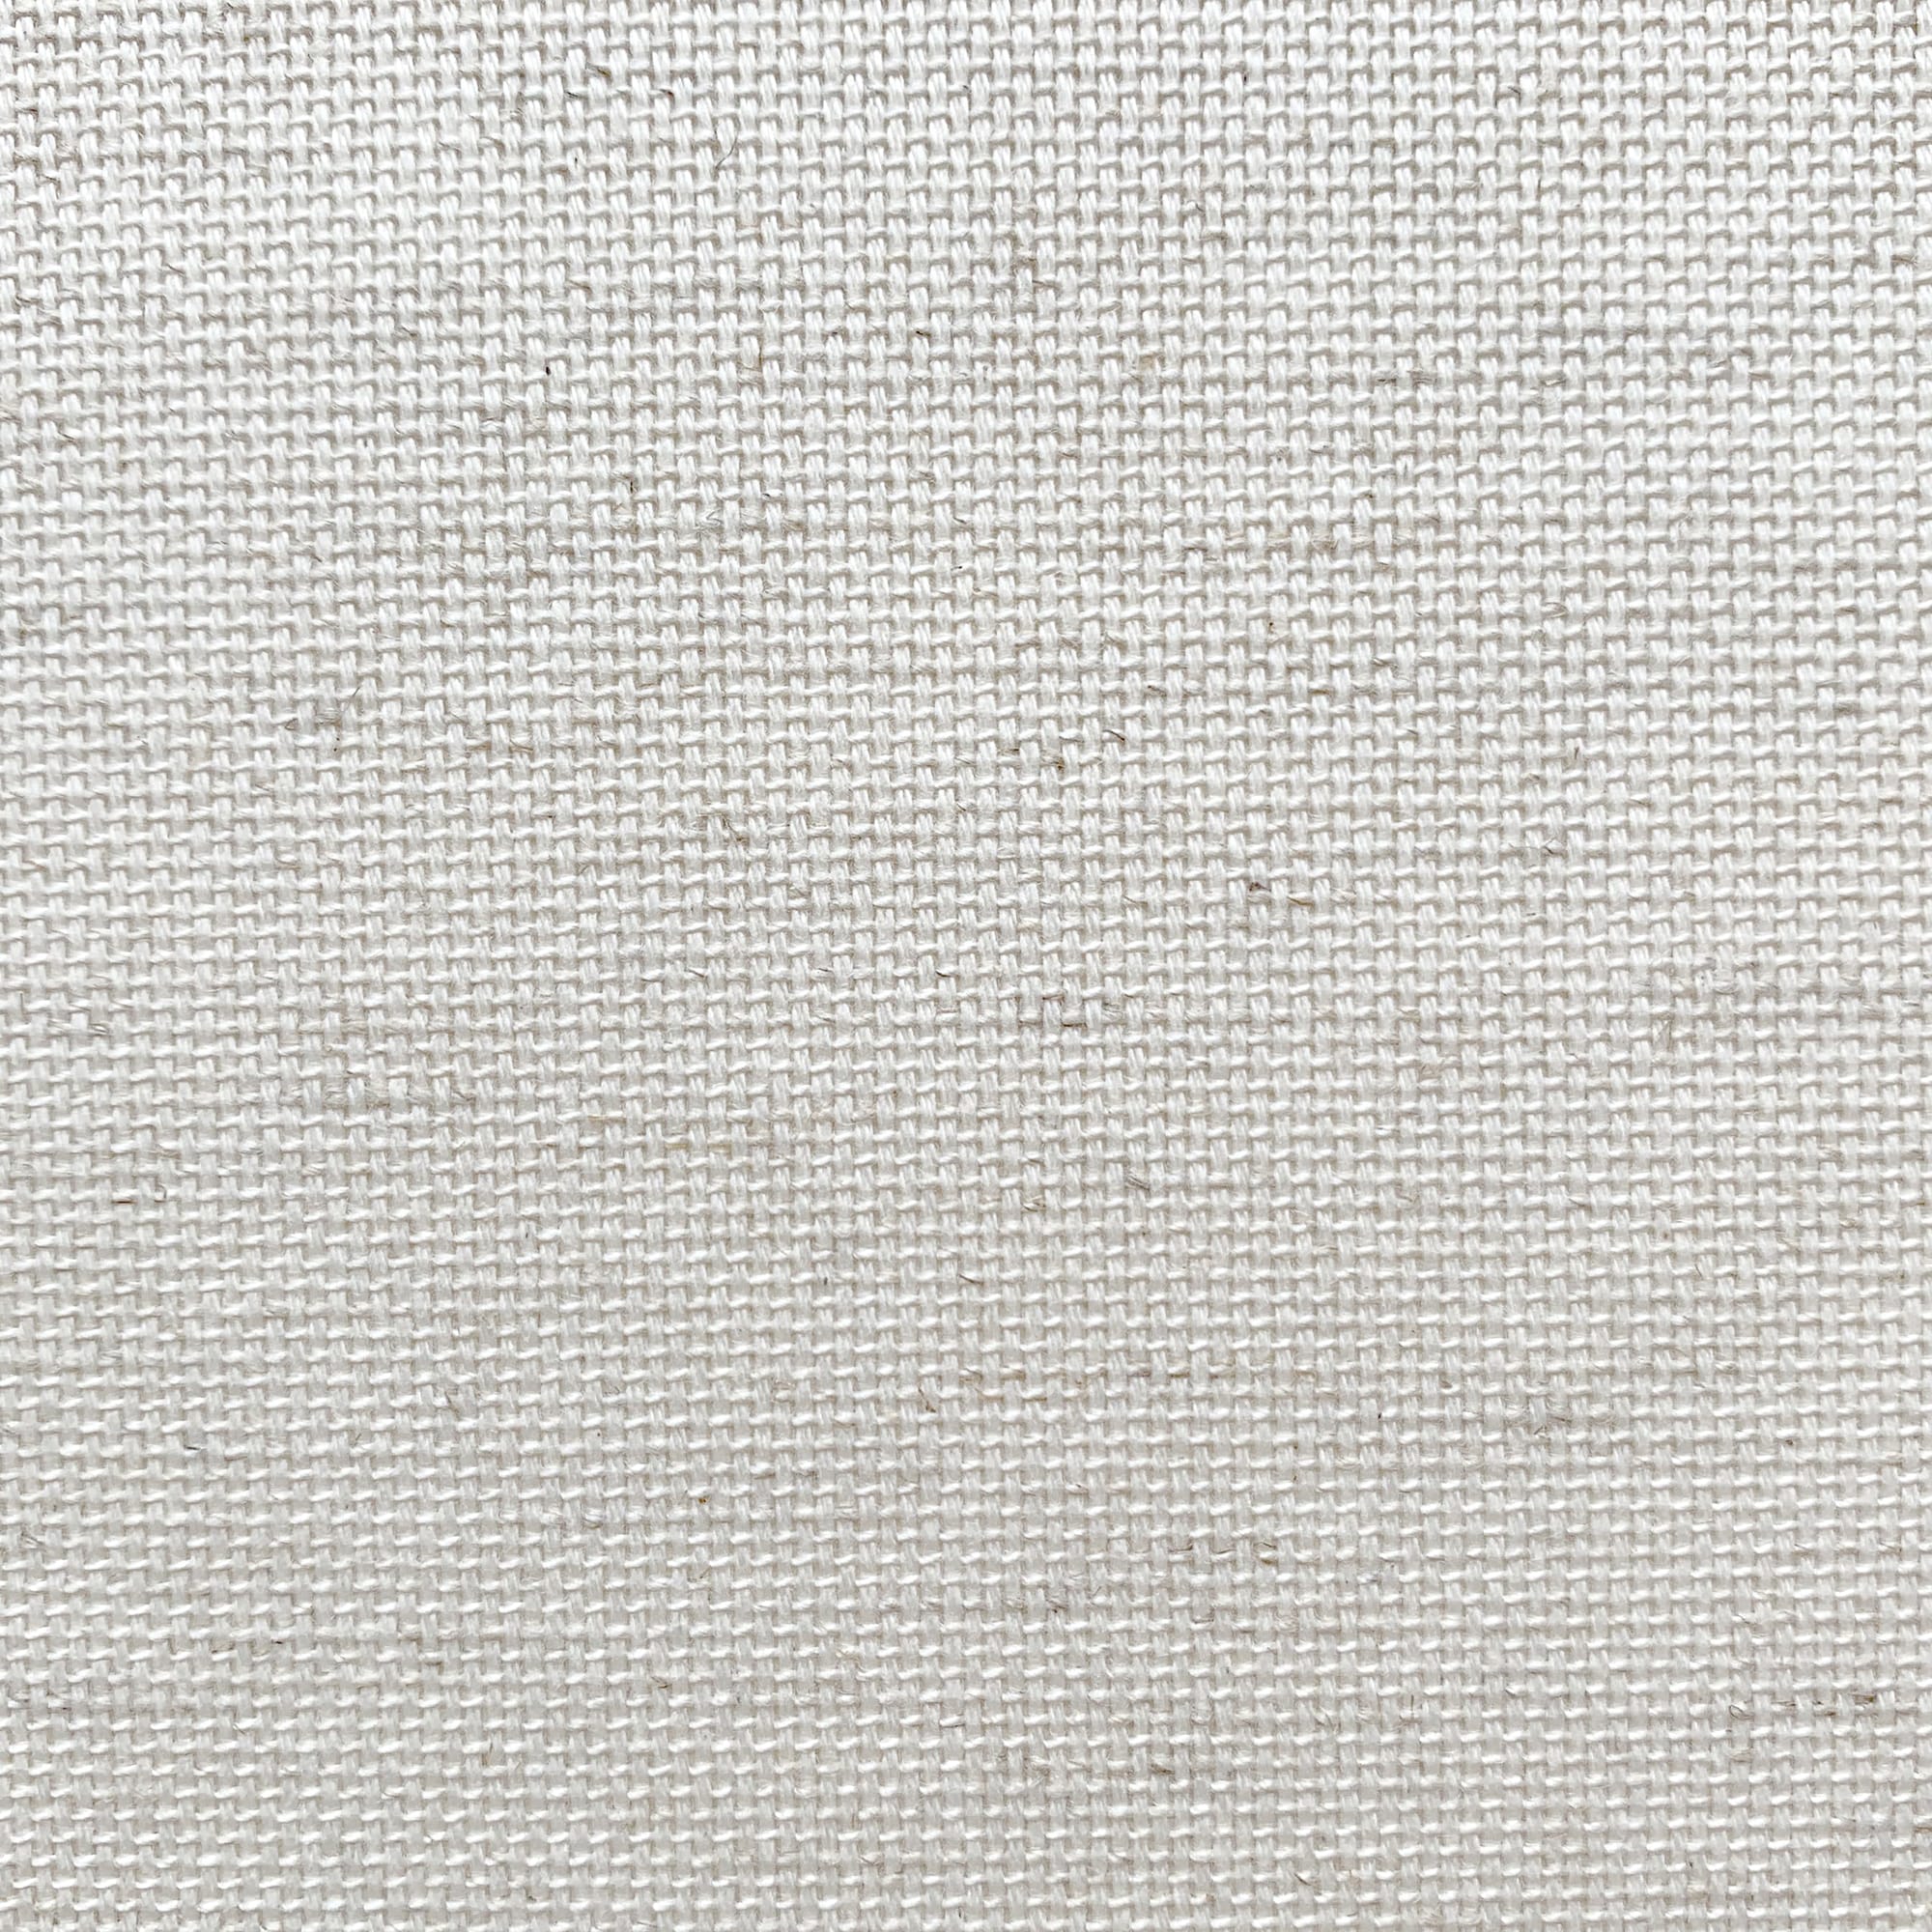 織物壁紙 綿麻 W920mm×L10m WL-WP014-02-G141 布ならではの暖かみがあります